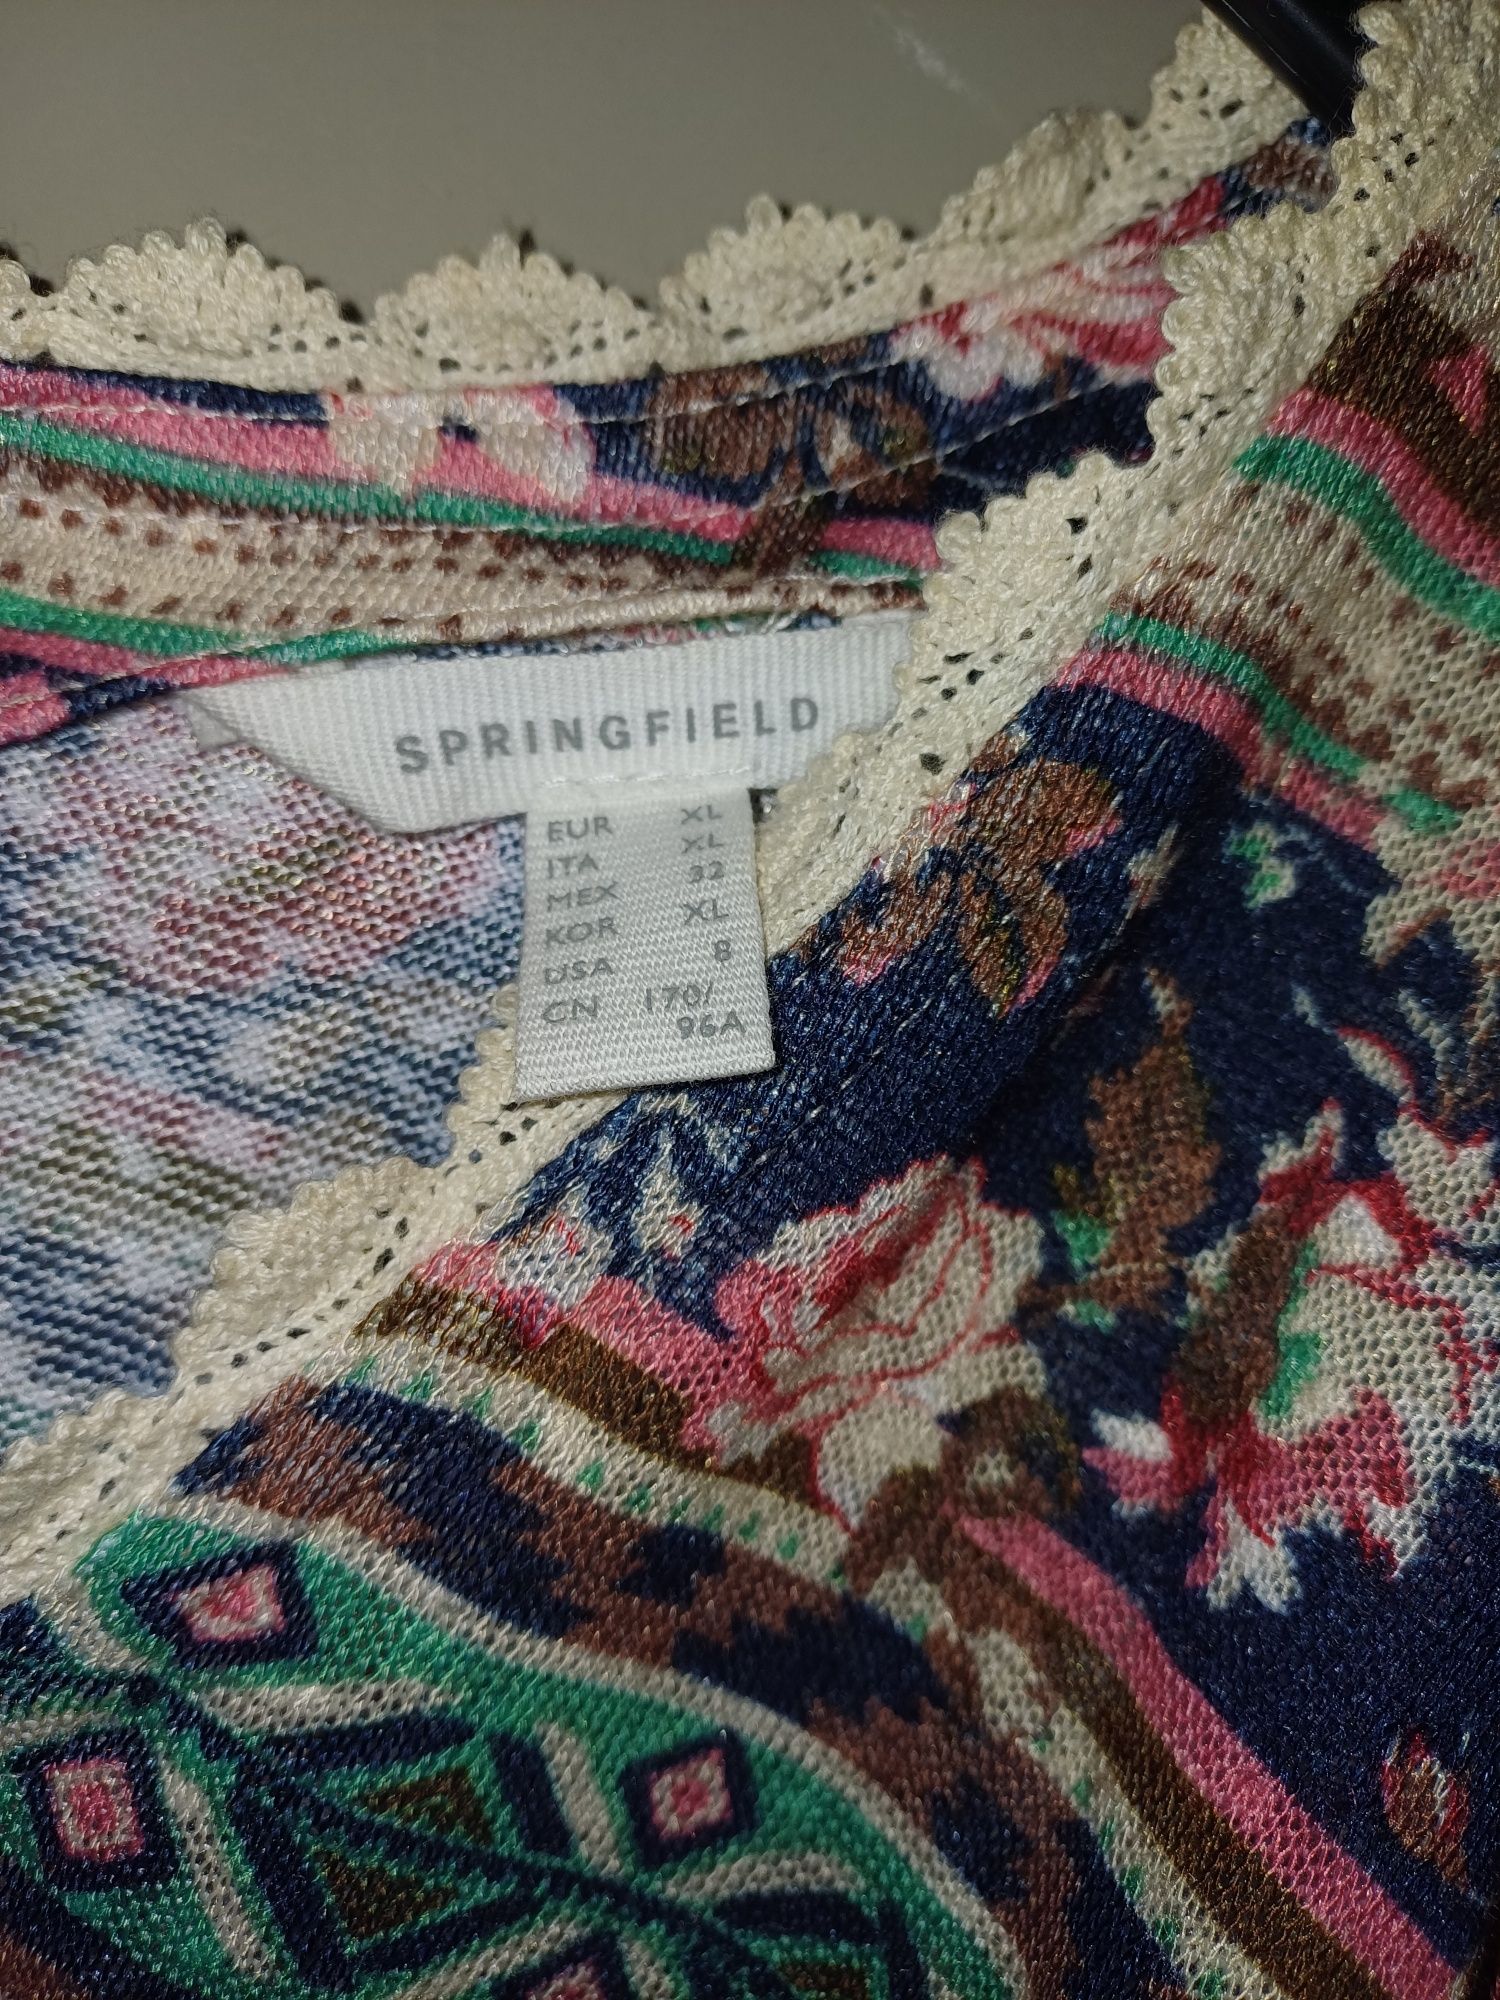 Vestido Springfield estampado com flores, manga comprida, tamanho L/XL